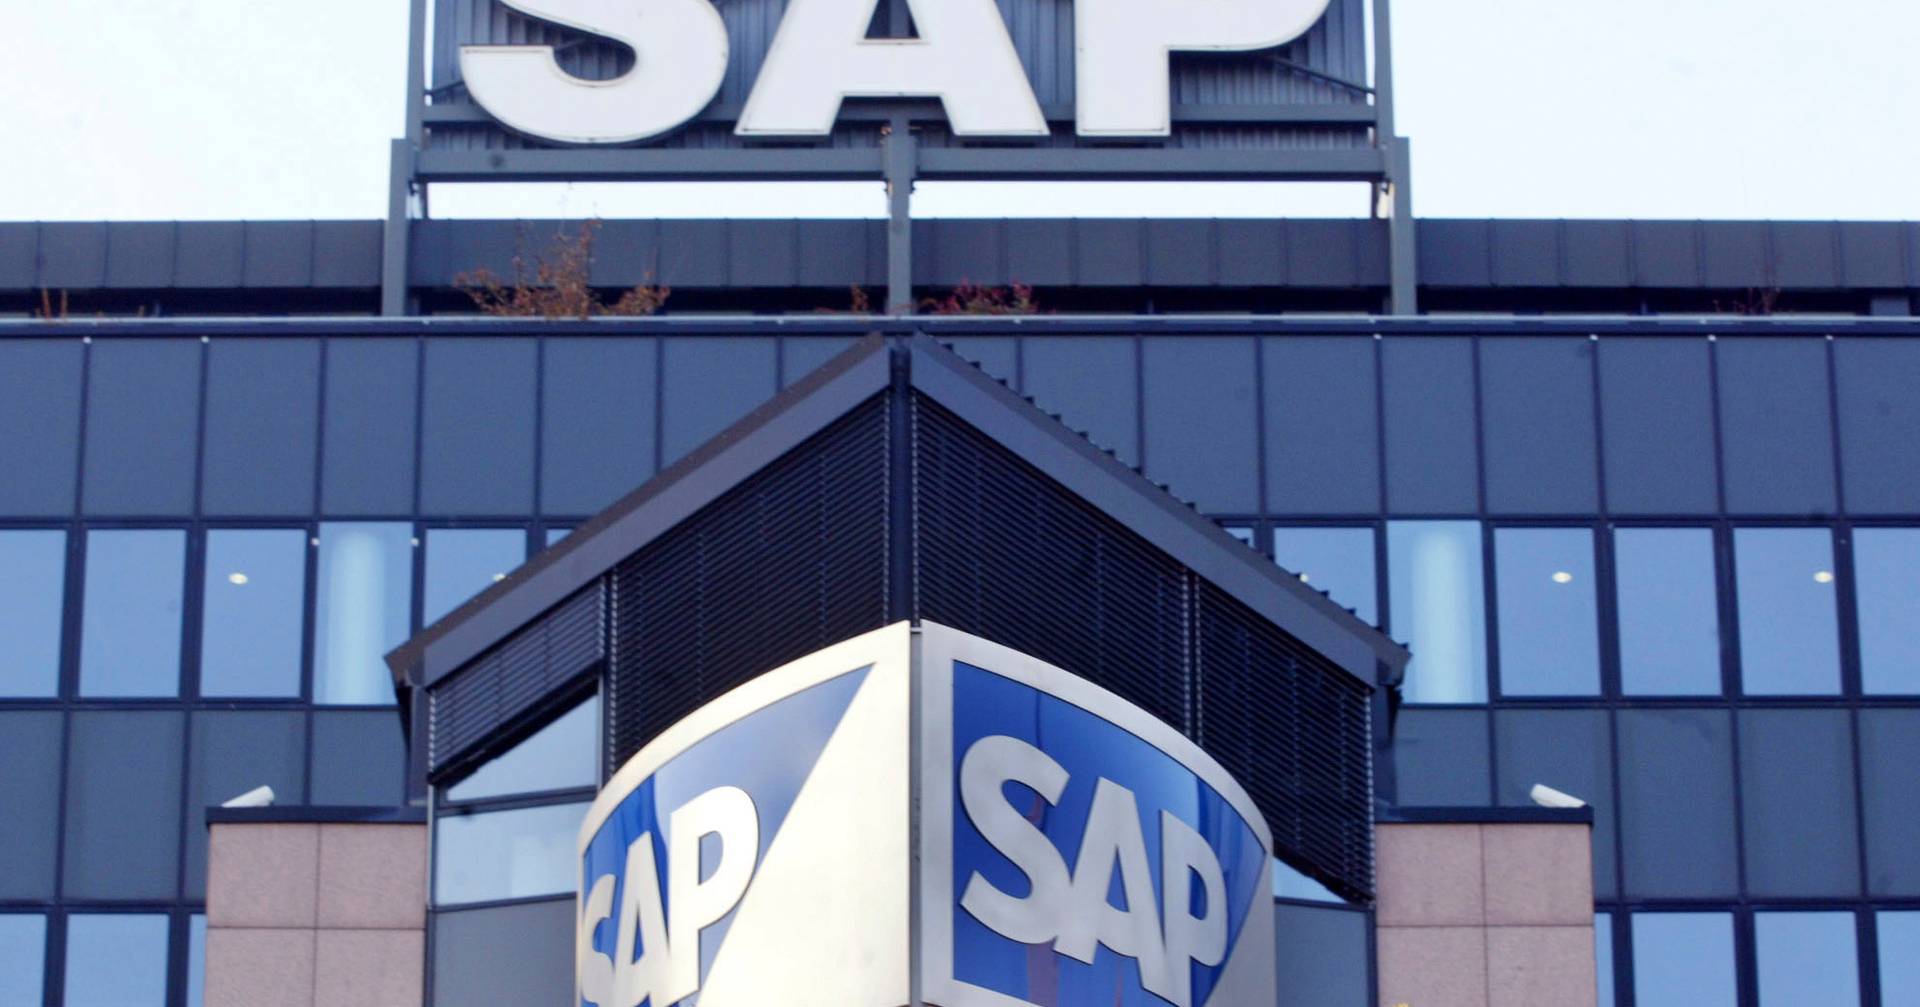 Deutsches Technologieunternehmen SAP entlässt 3.000 Mitarbeiter, nachdem der Gewinn um 50 % eingebrochen ist